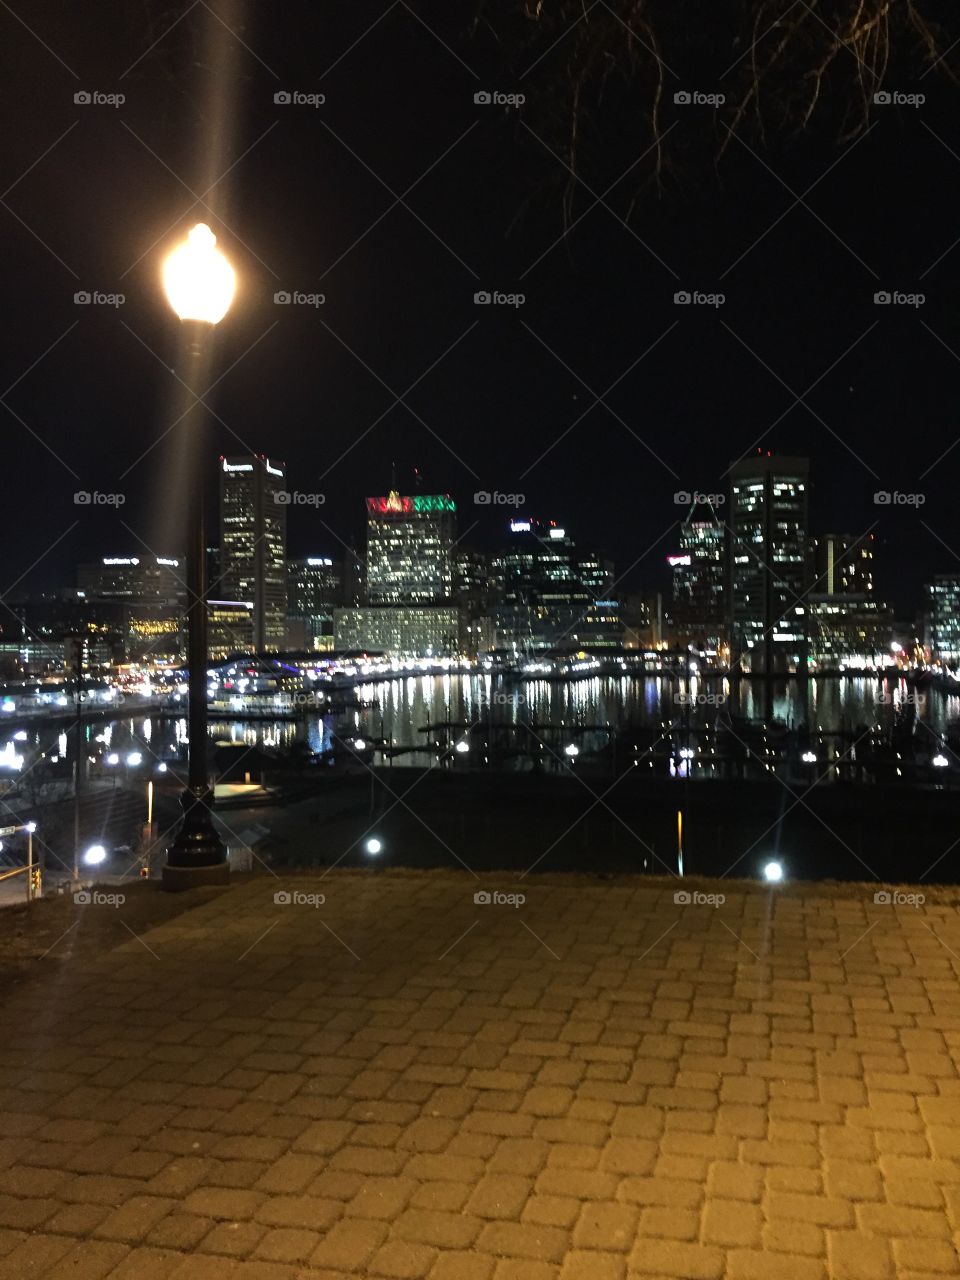 Baltimore night 